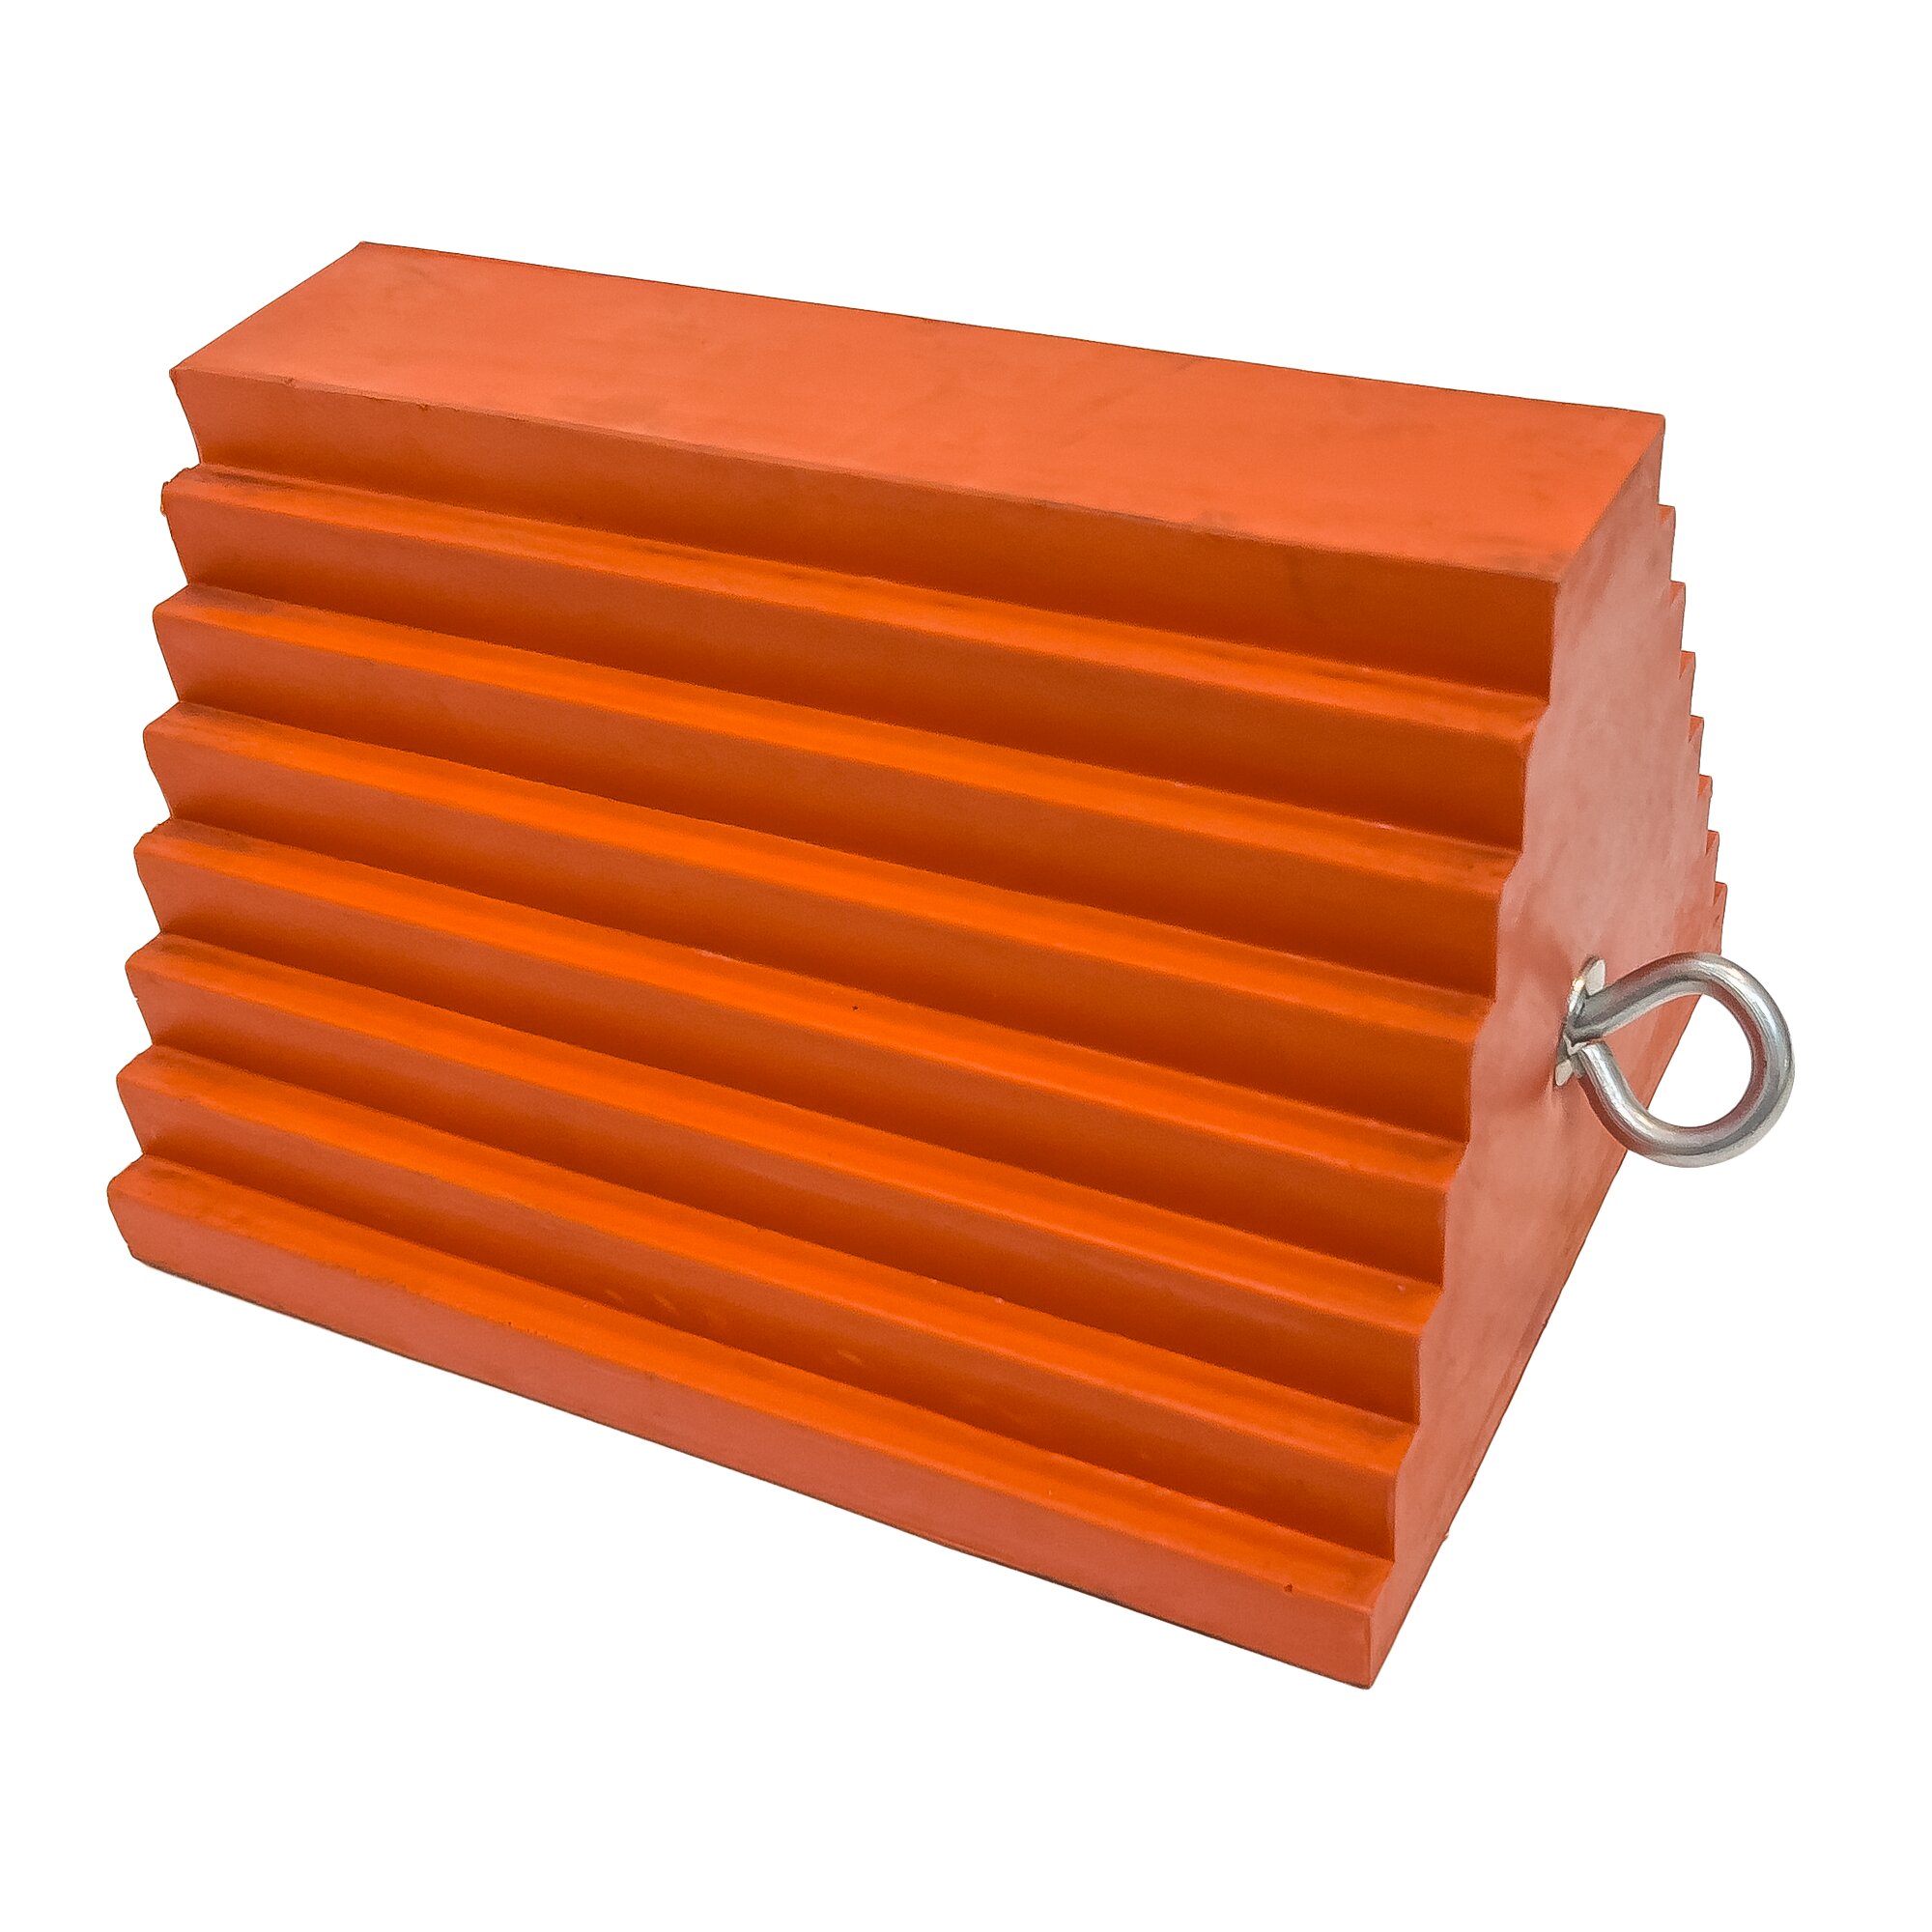 Oranžový plastový zakladací klin UCTS003 - dĺžka 25 cm, šírka 20 cm, výška 15 cm